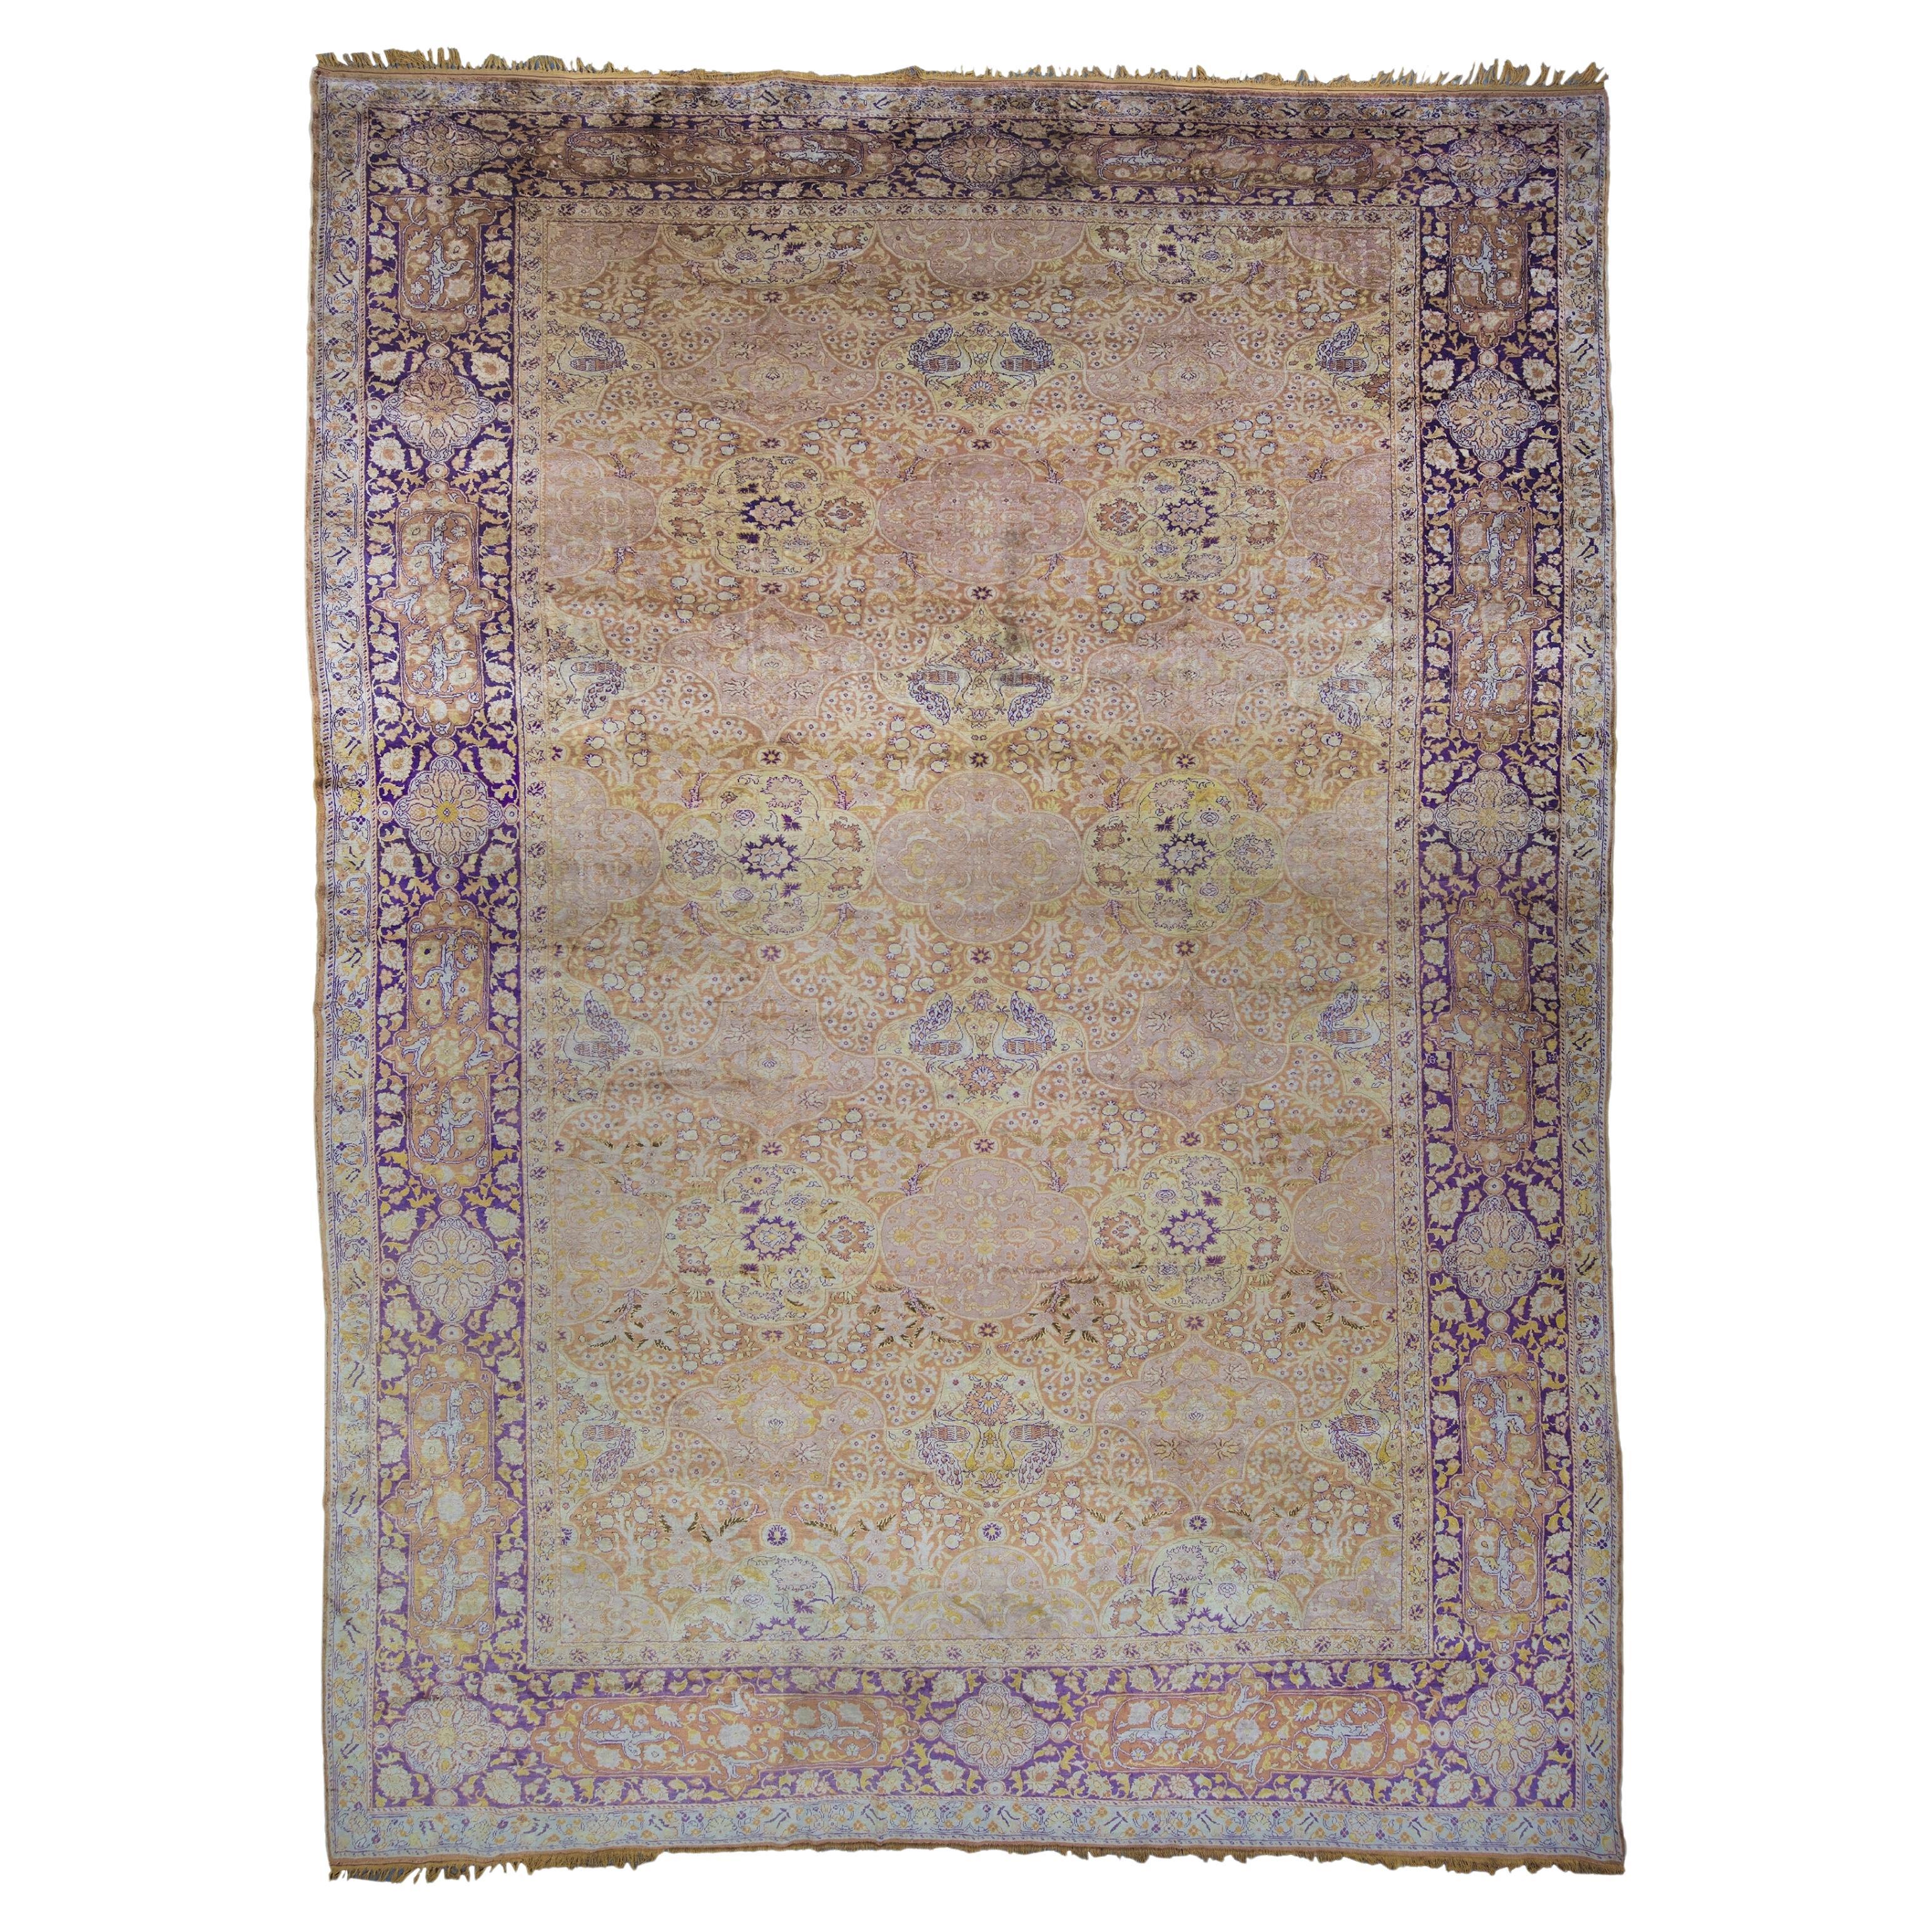 What is a Kayseri rug?